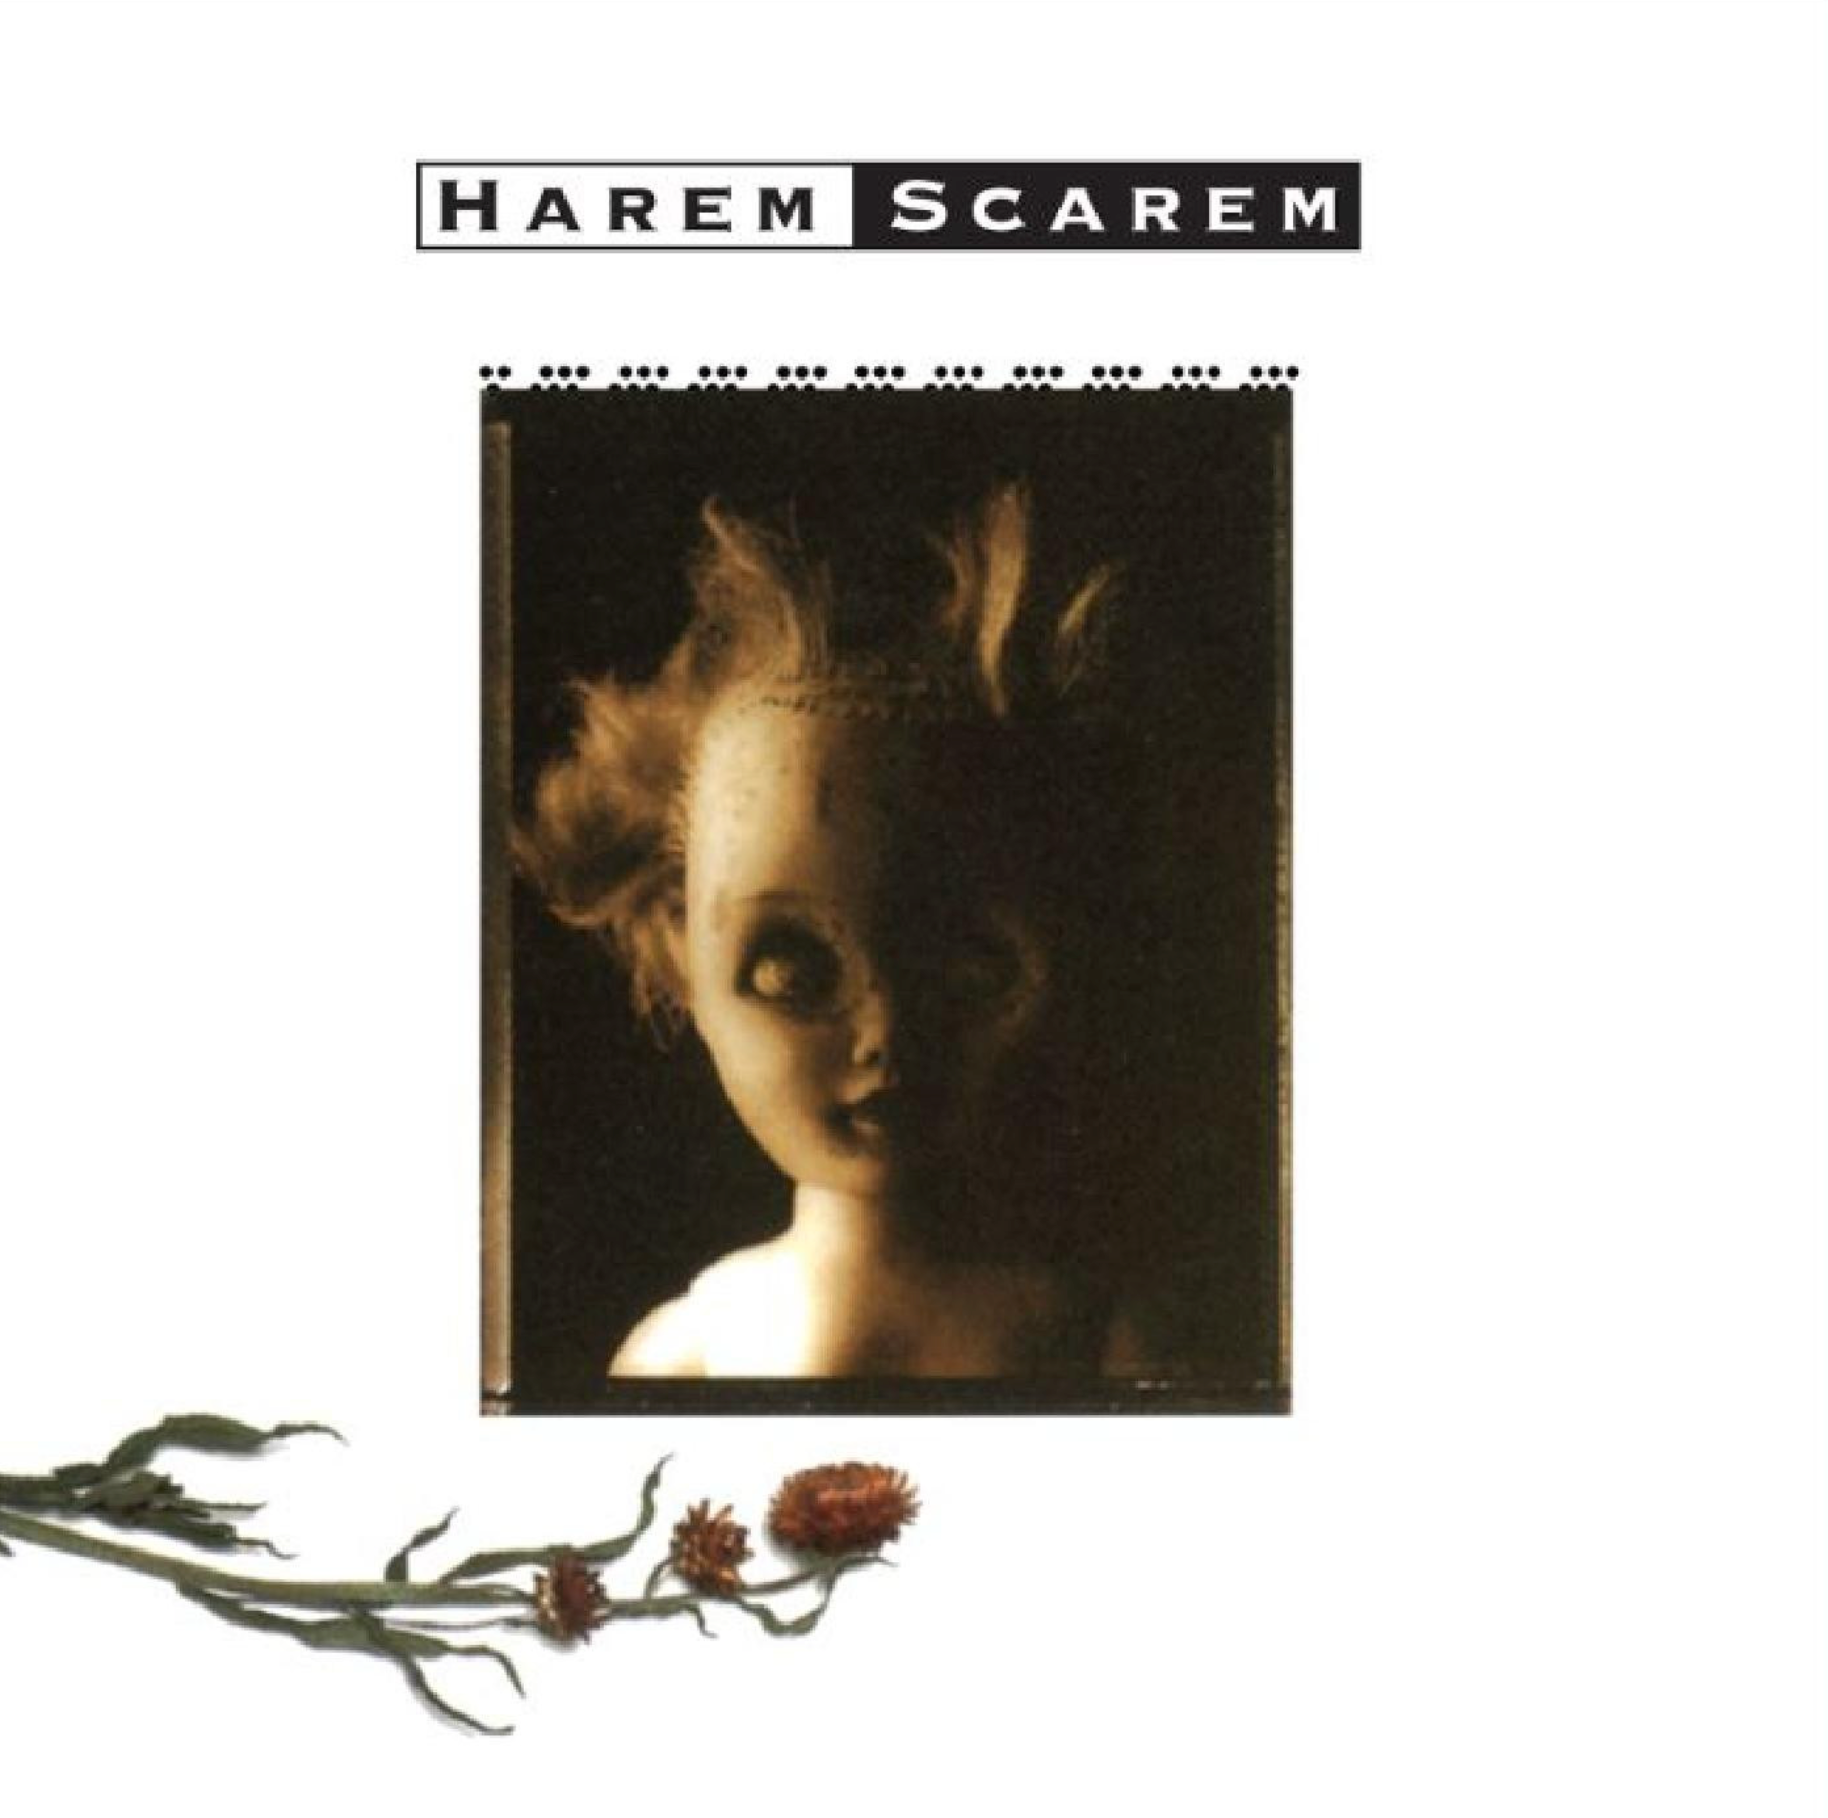 Harem Scarem - Harem Scarem [Red Grape Vinyl]